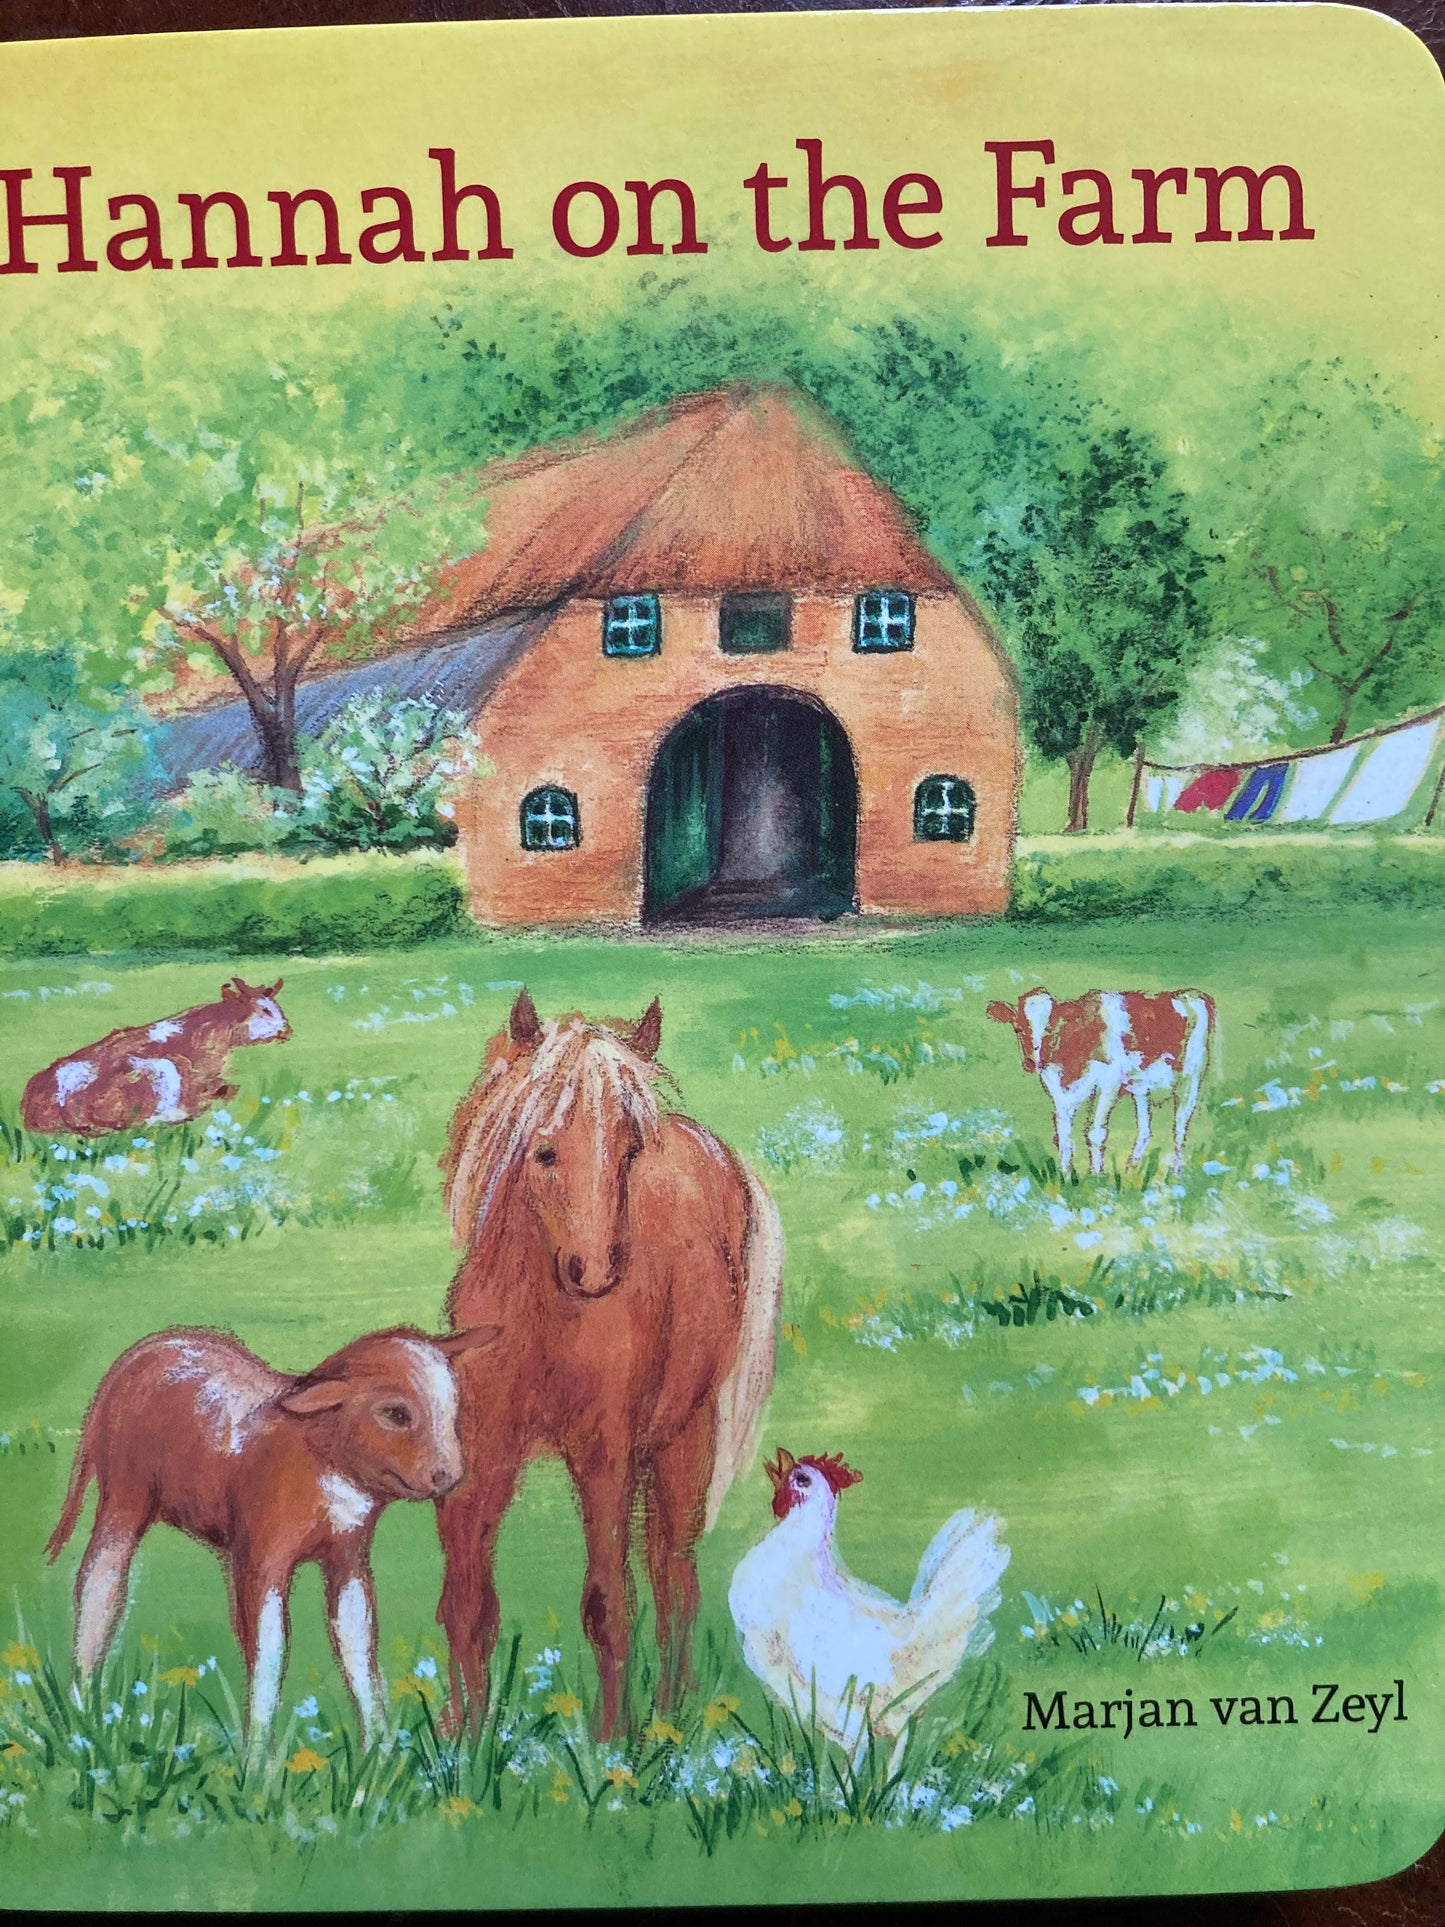 Board Book, Baby - HANNAH ON THE FARM